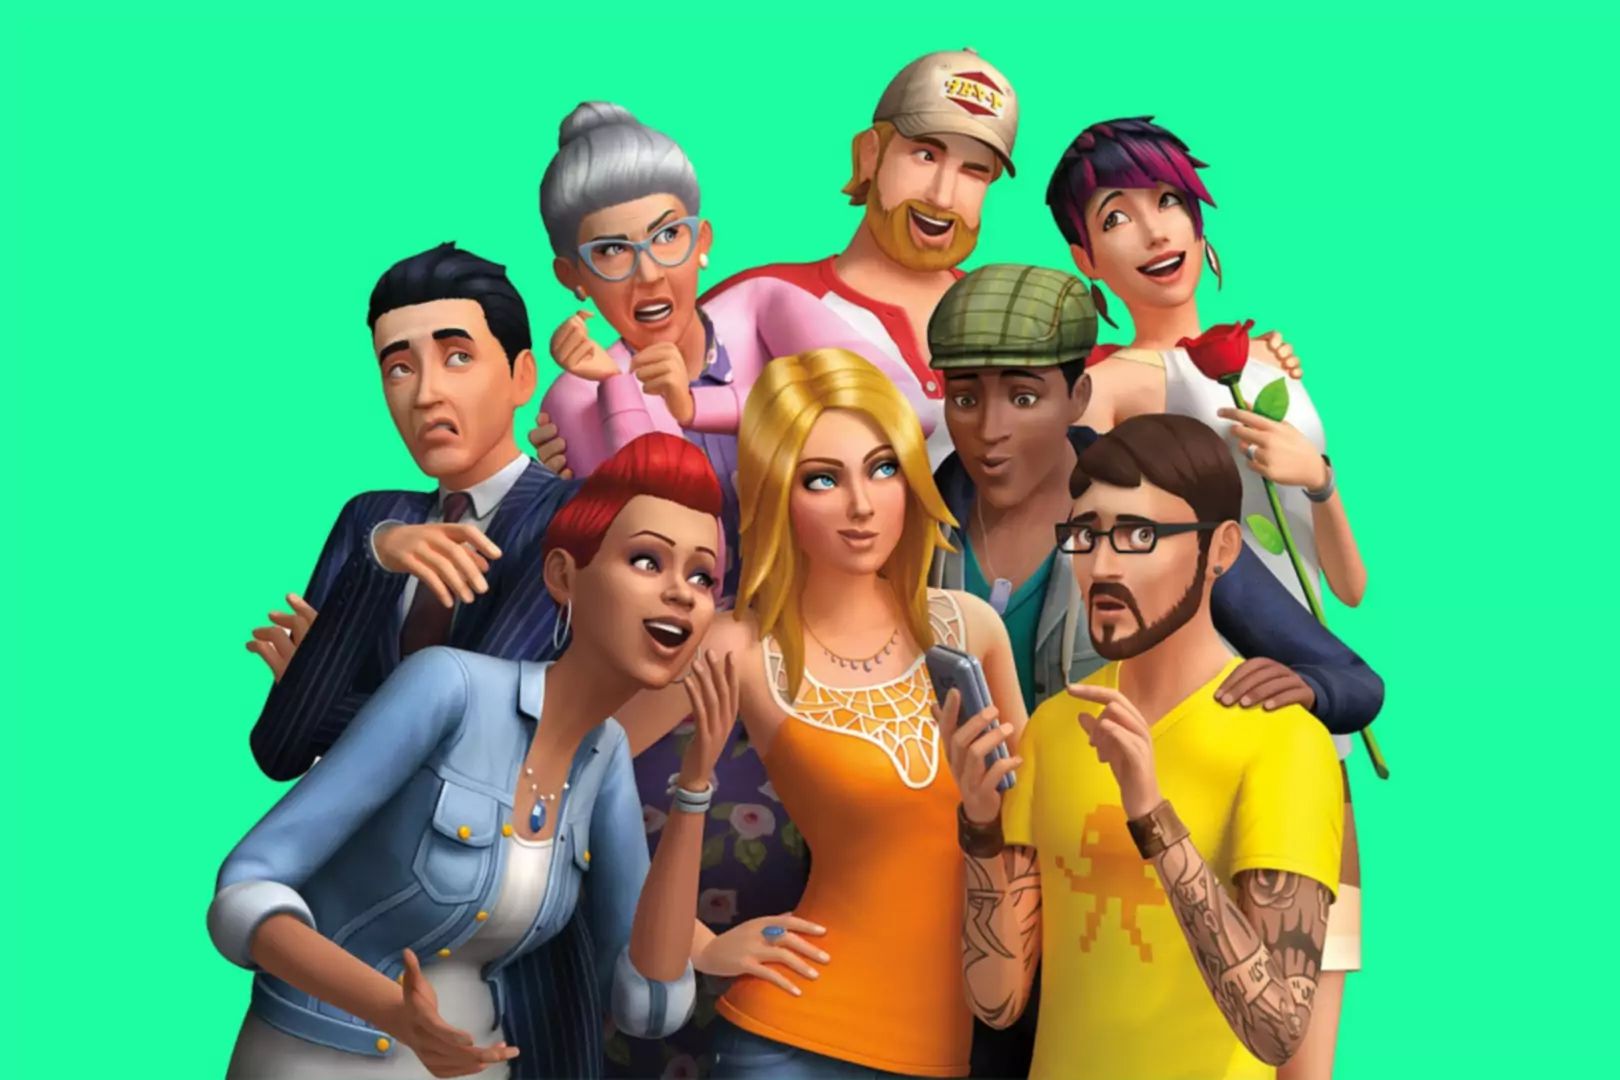 Společné pózování postaviček CGI Sims a jejich hloupé výrazy